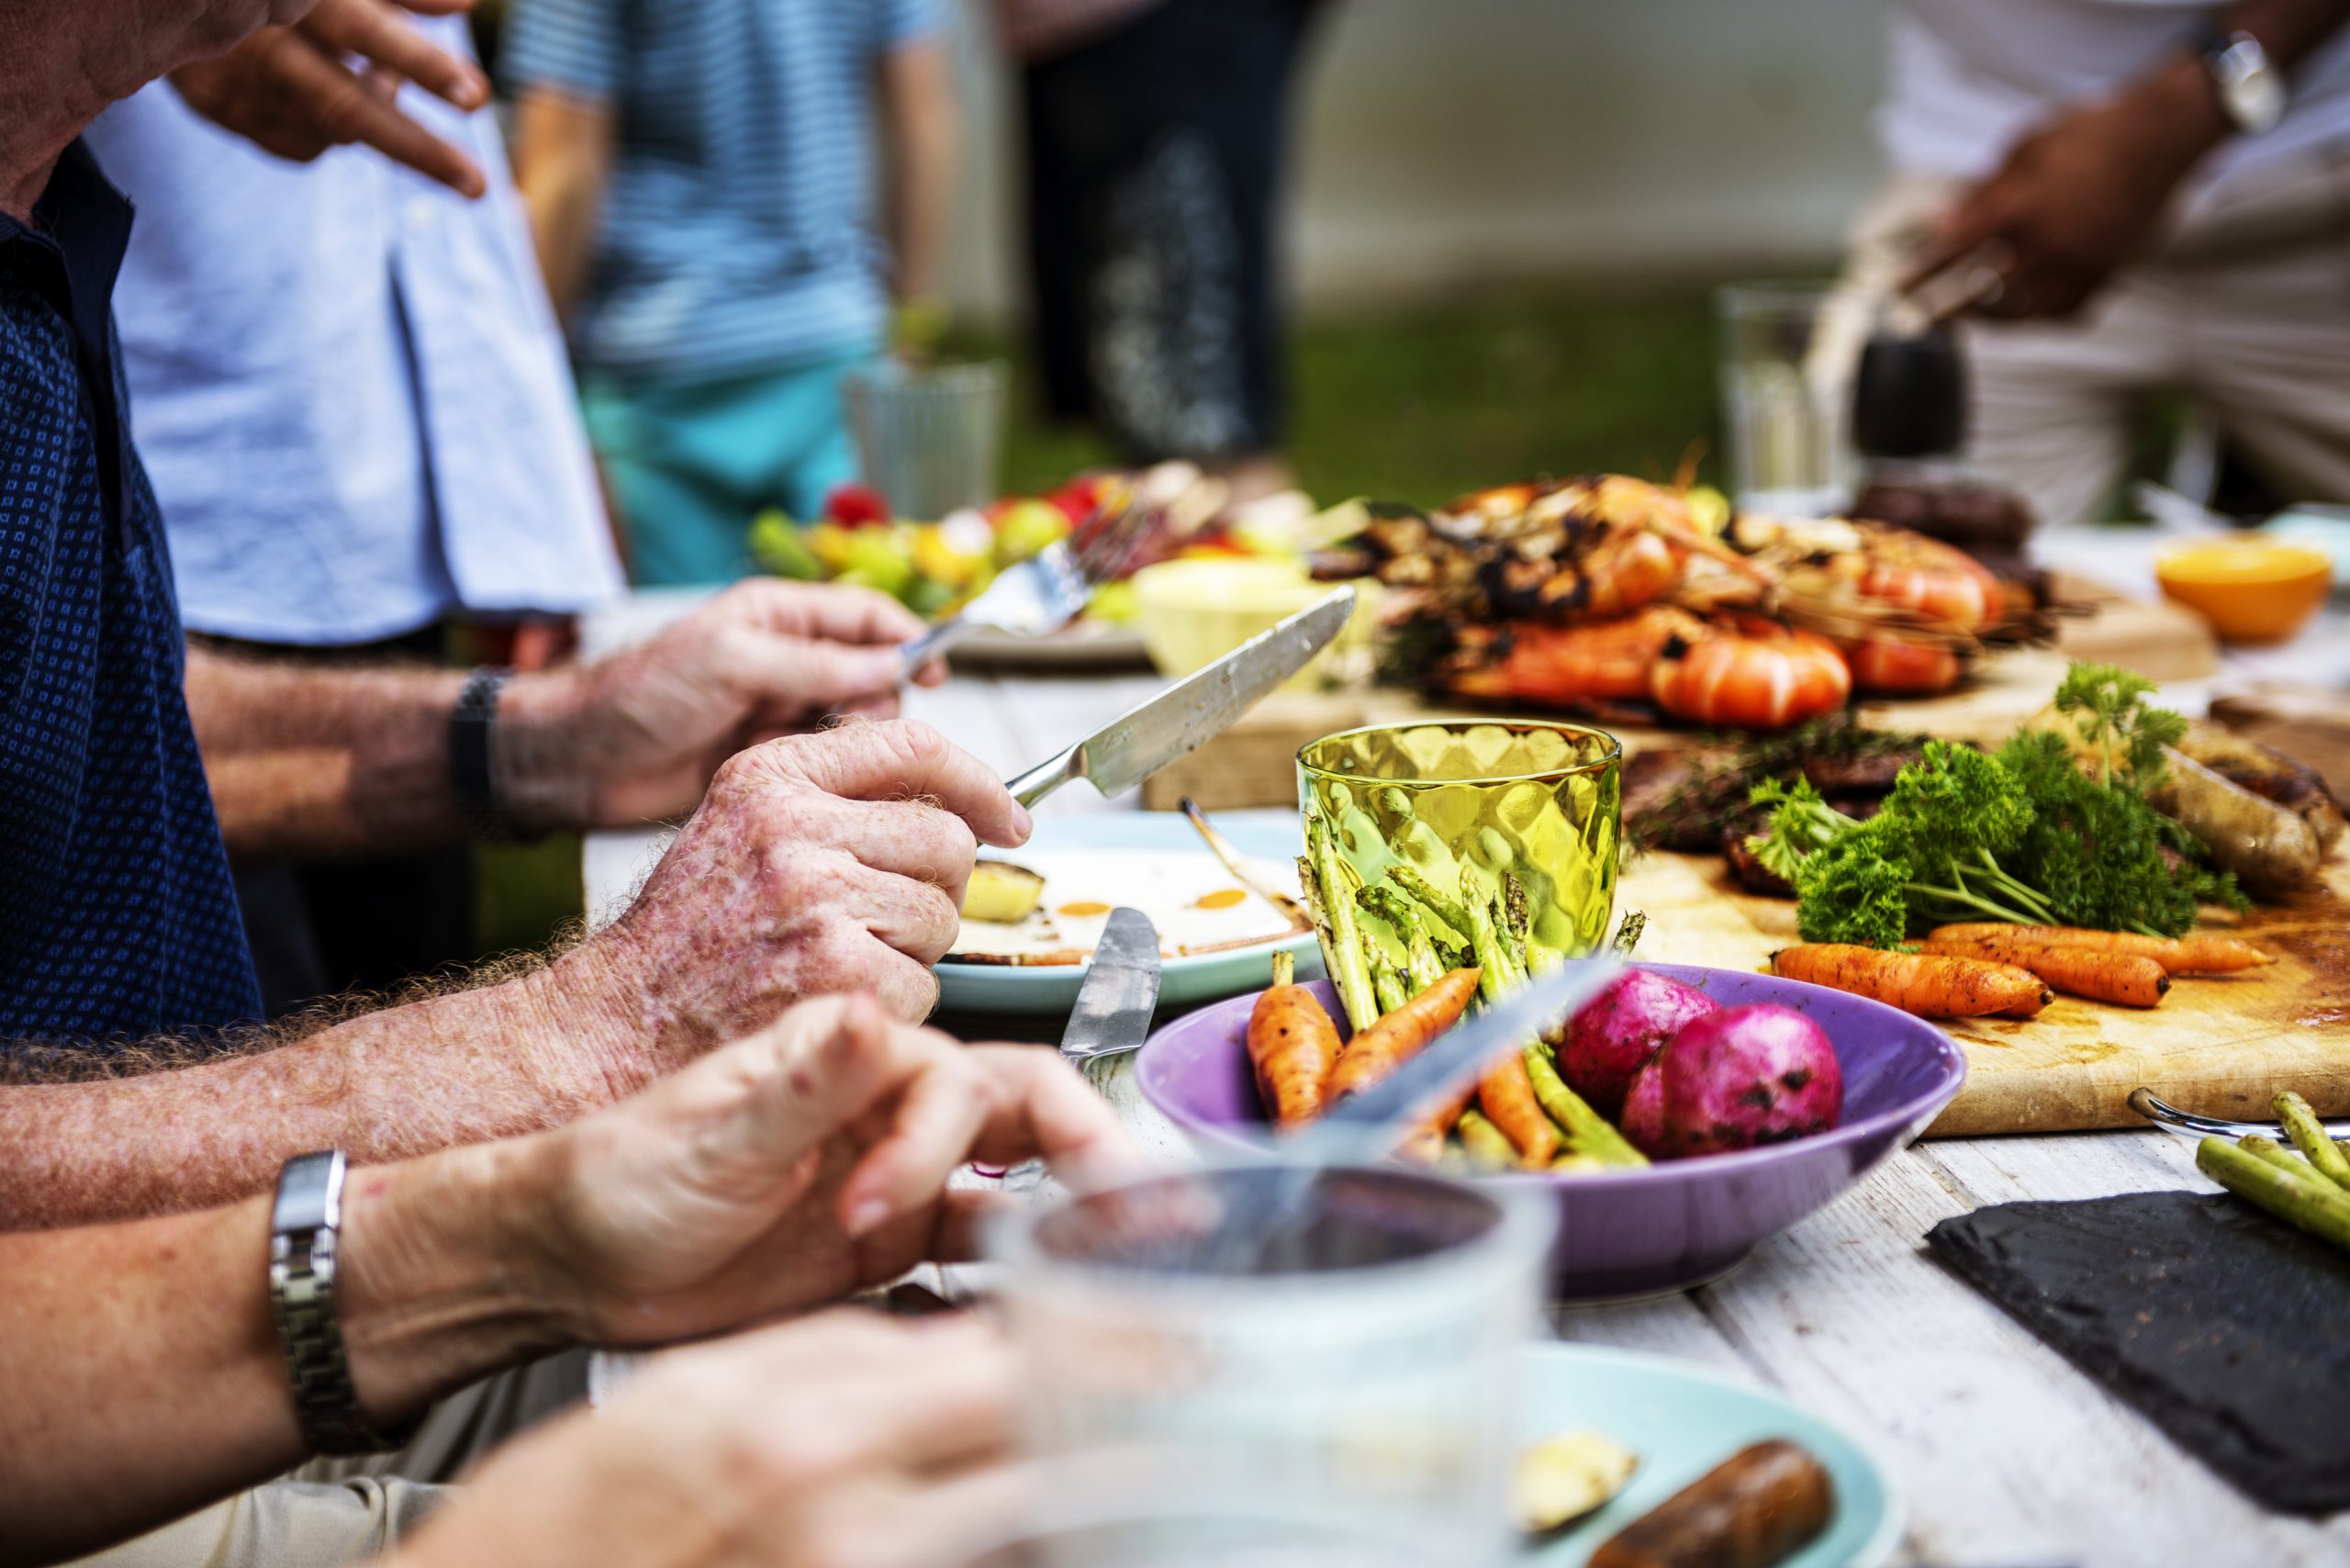 Il Centro Incontro Anziani di Moretta organizza un pranzo di fine anno